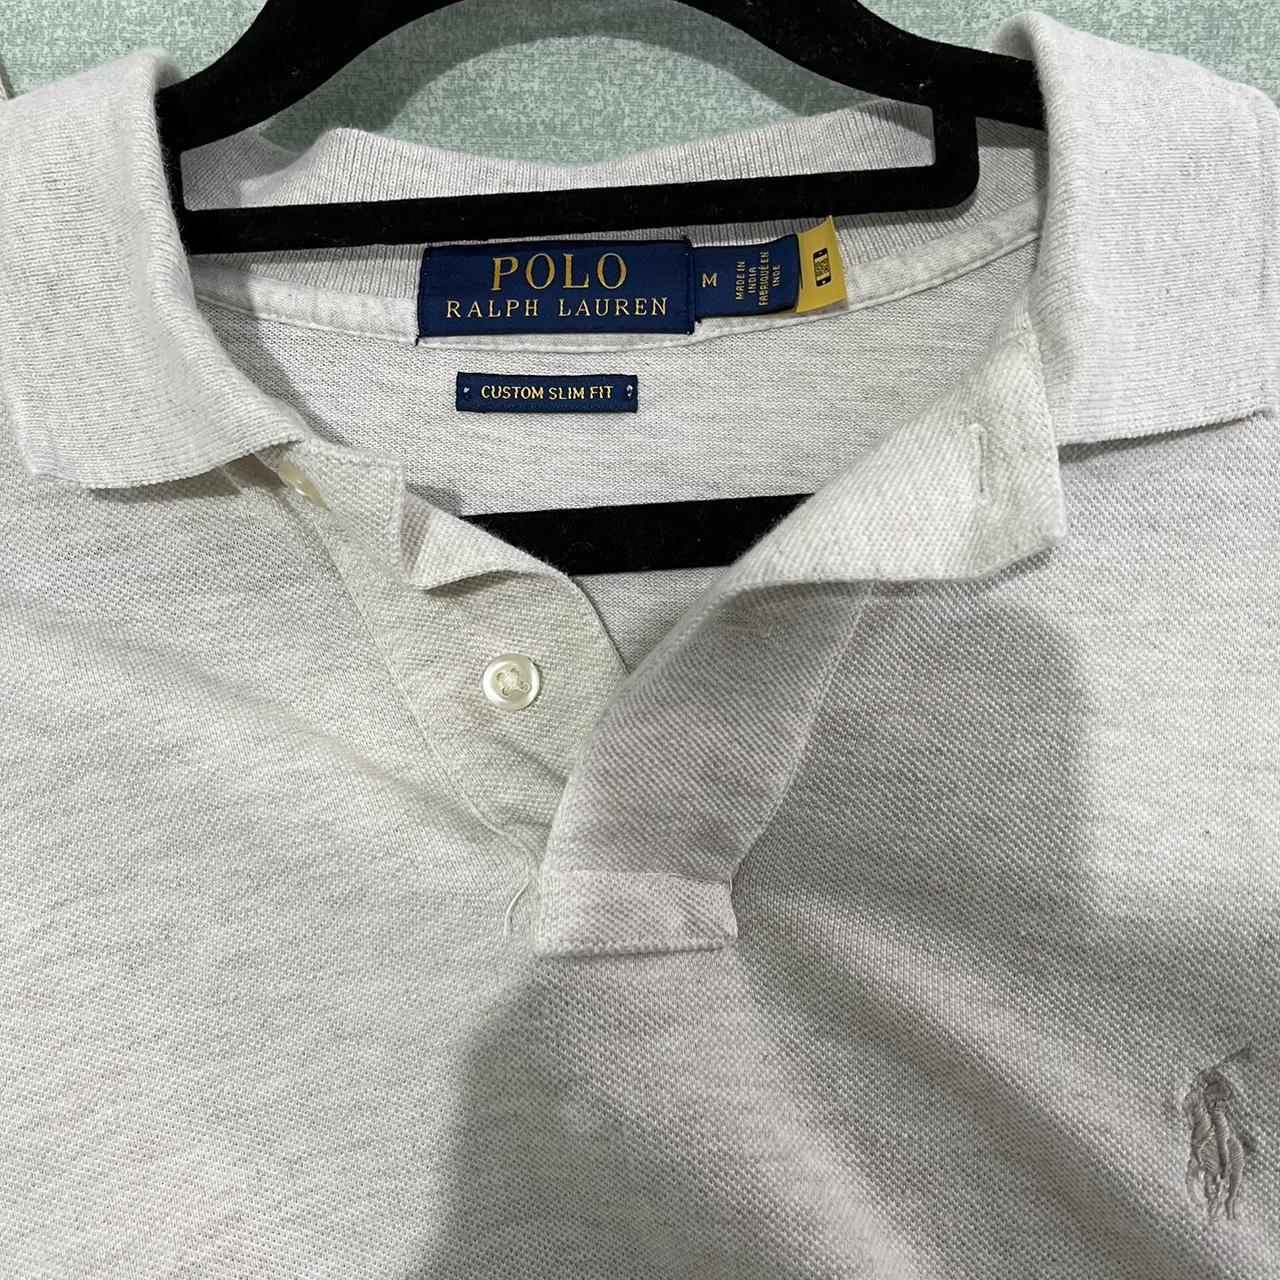 Ralph Lauren Polo Shirt Size M - Depop